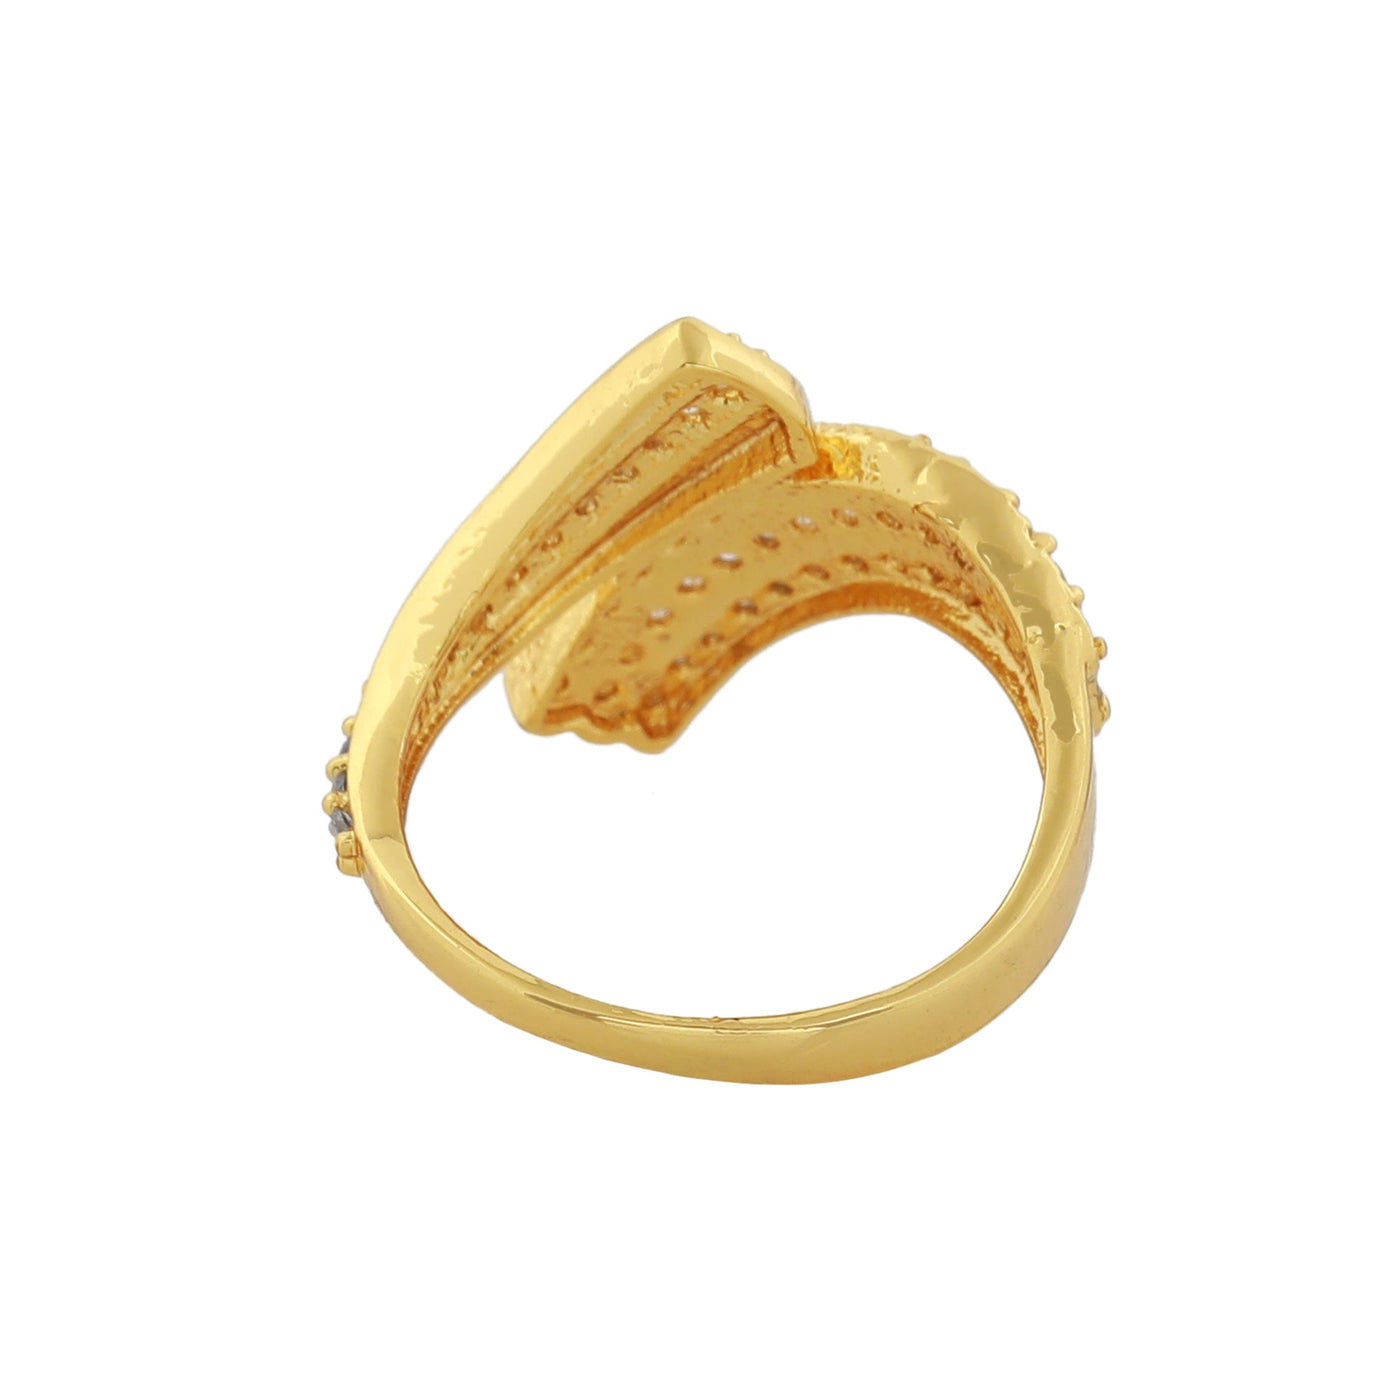 Estele Gold Plated CZ Marvelous Designer Ring for Women